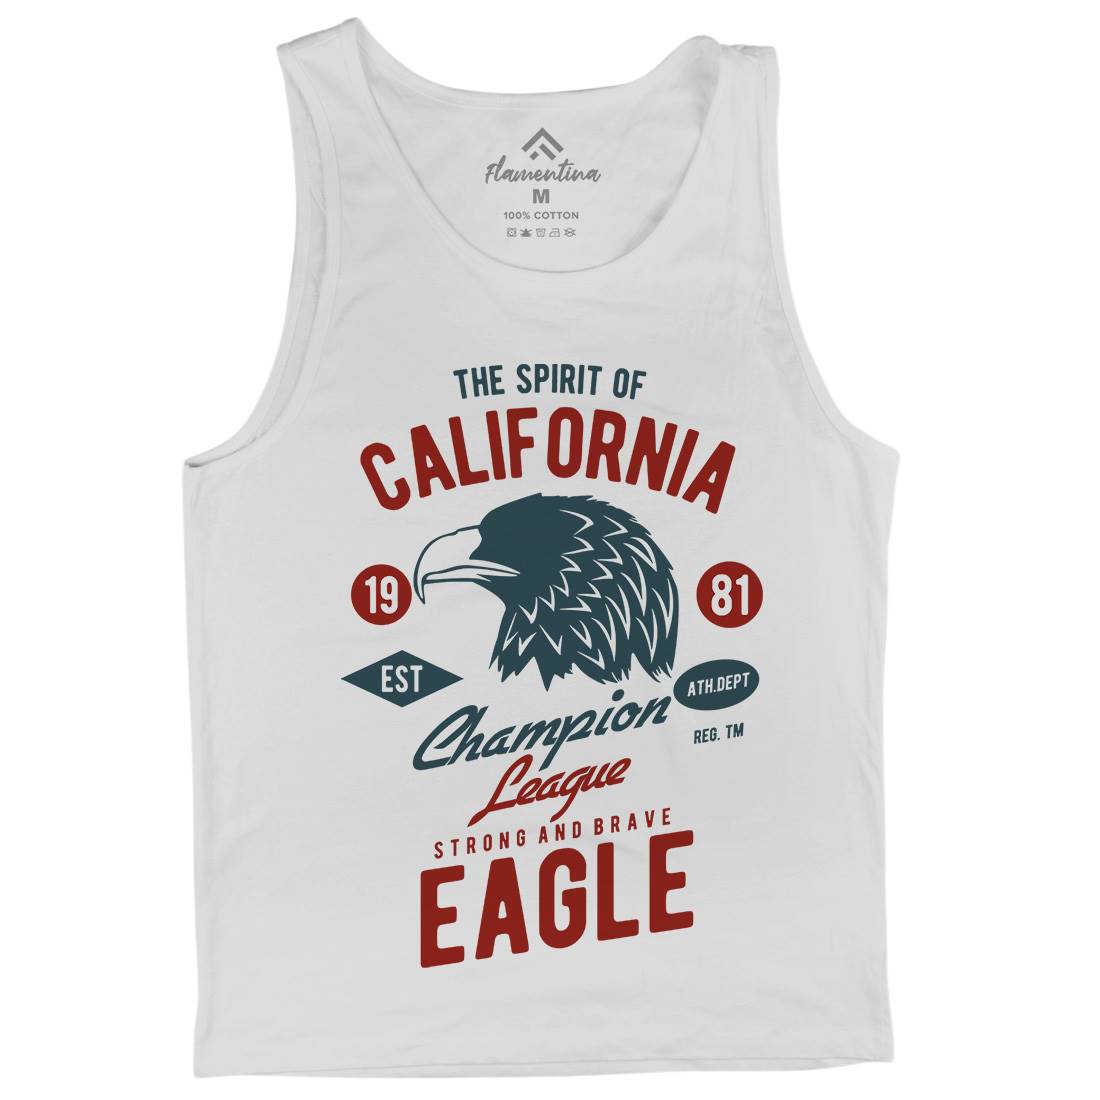 The Spirit Of California Mens Tank Top Vest American B467